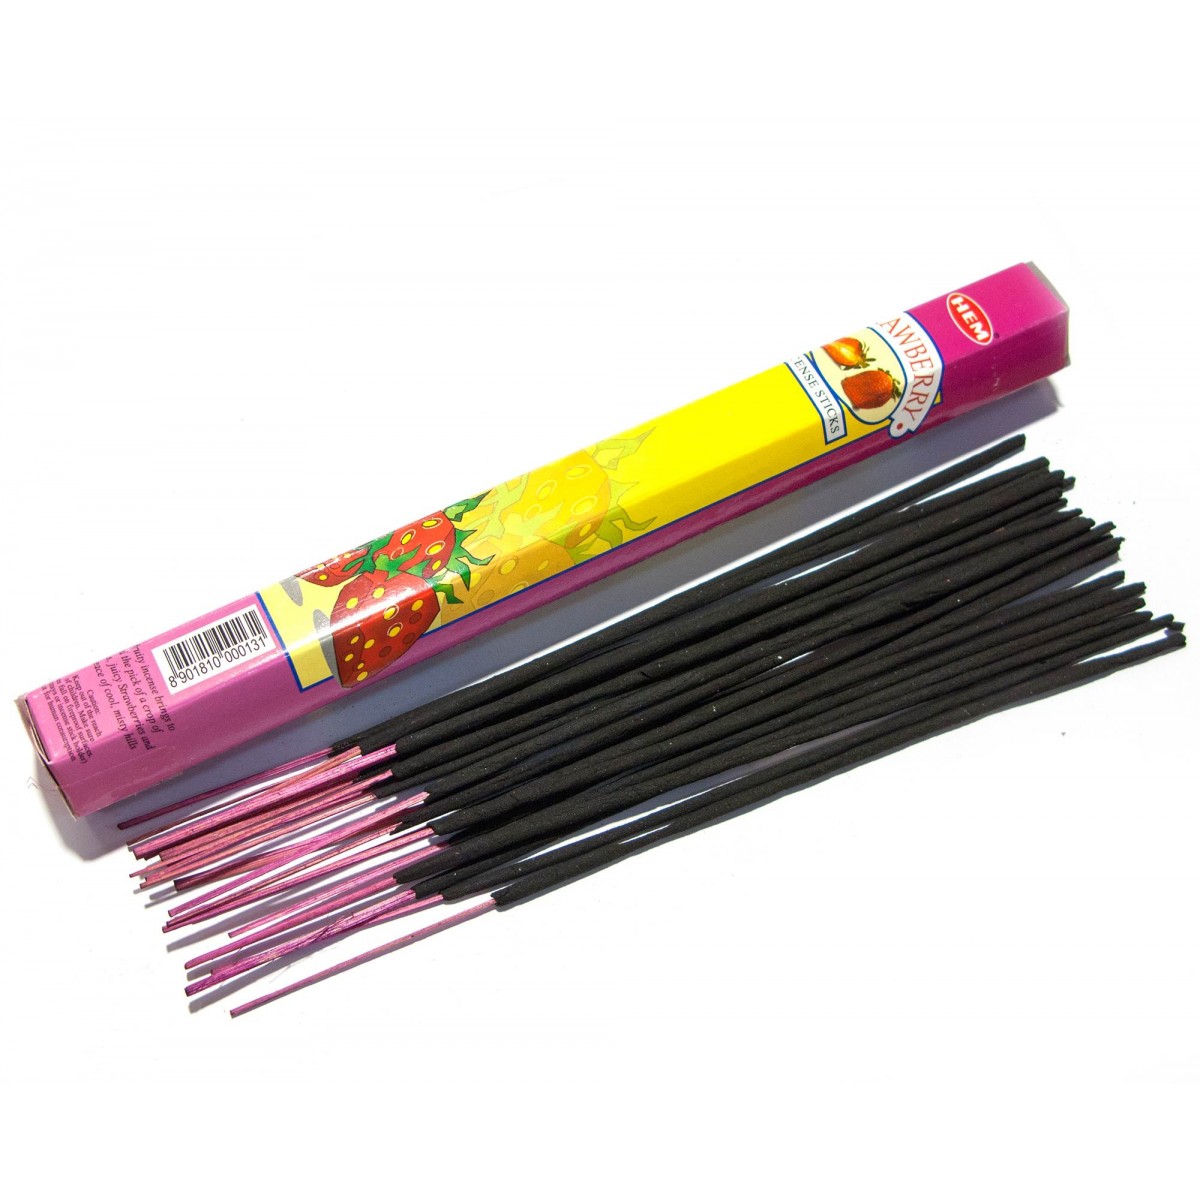 Hem Incense Sticks STRAWBERRY (Благовония КЛУБНИКА, Хем), уп. 20 палочек.